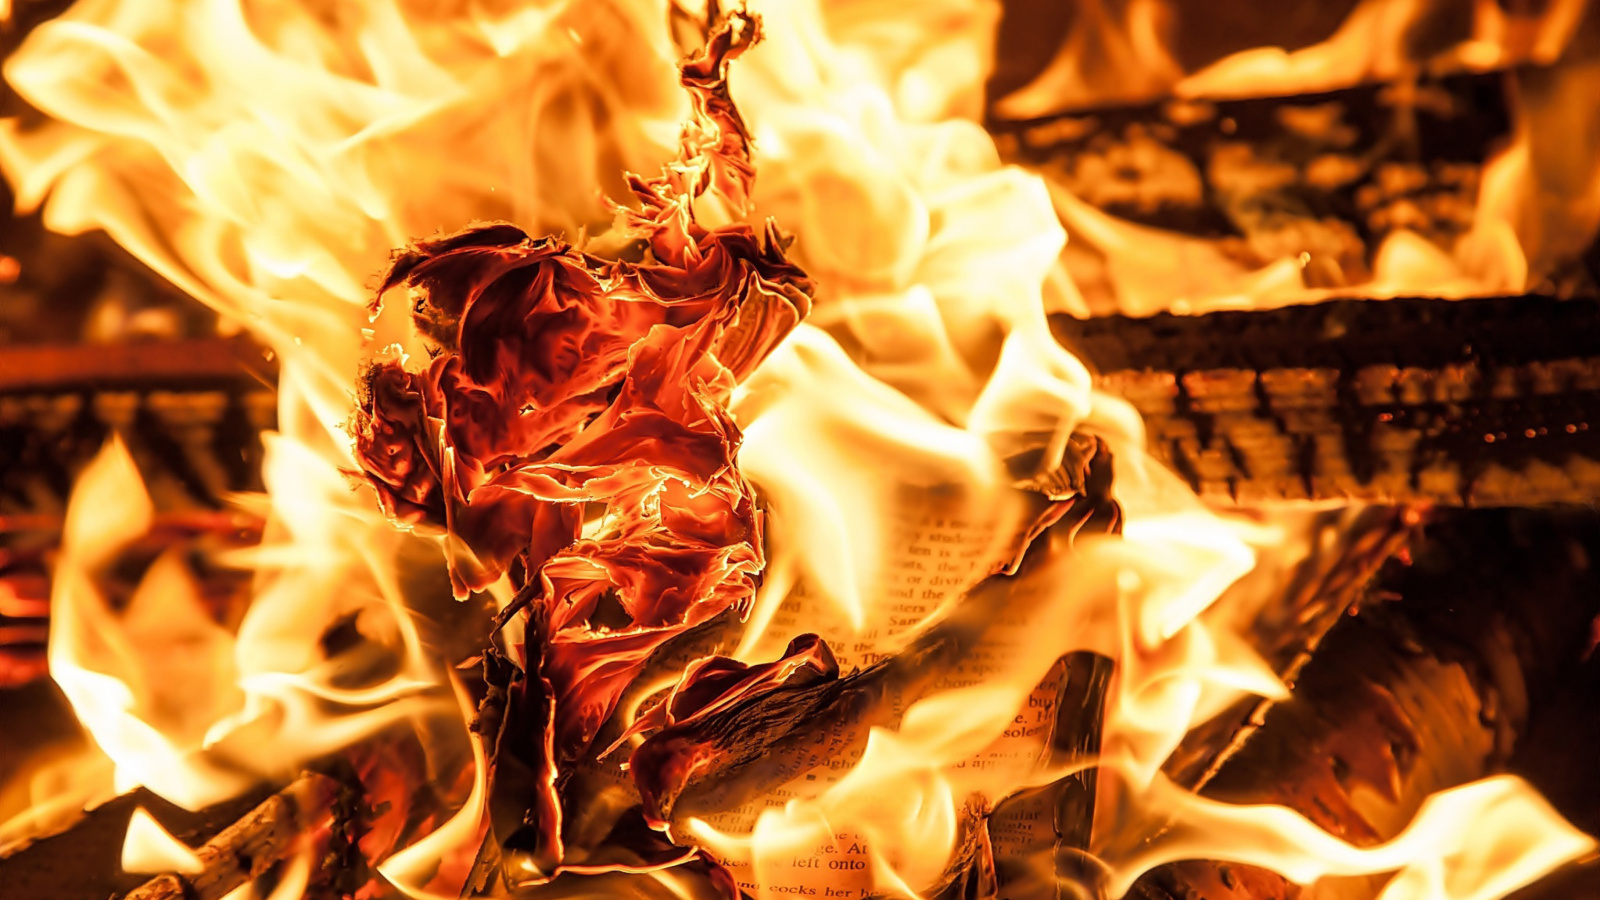 Sfondi Burn and flames 1600x900